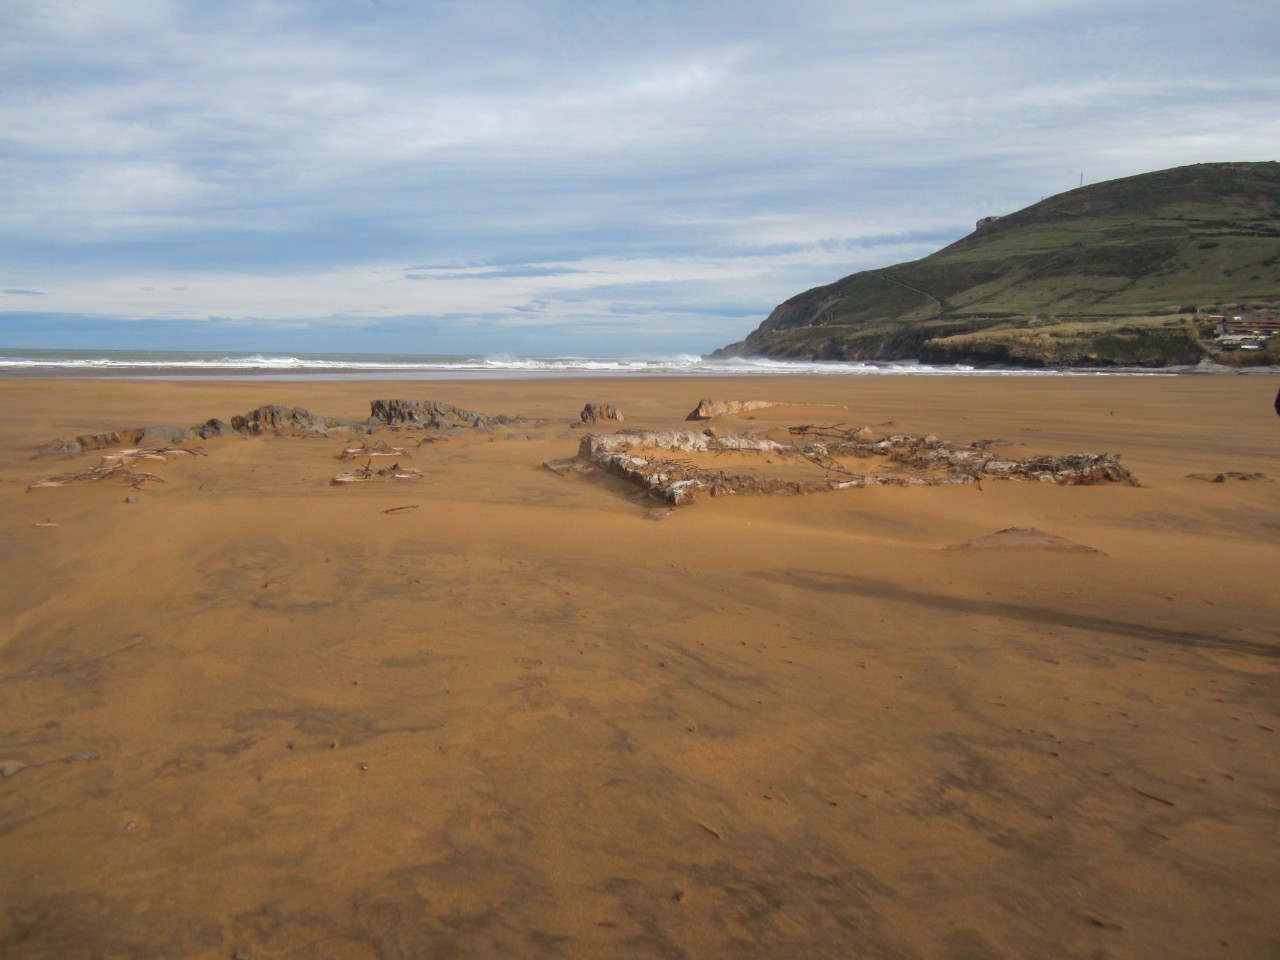 Entorno de la playa La Arena. Retirada antiguas cimentaciones afloradas en playa.